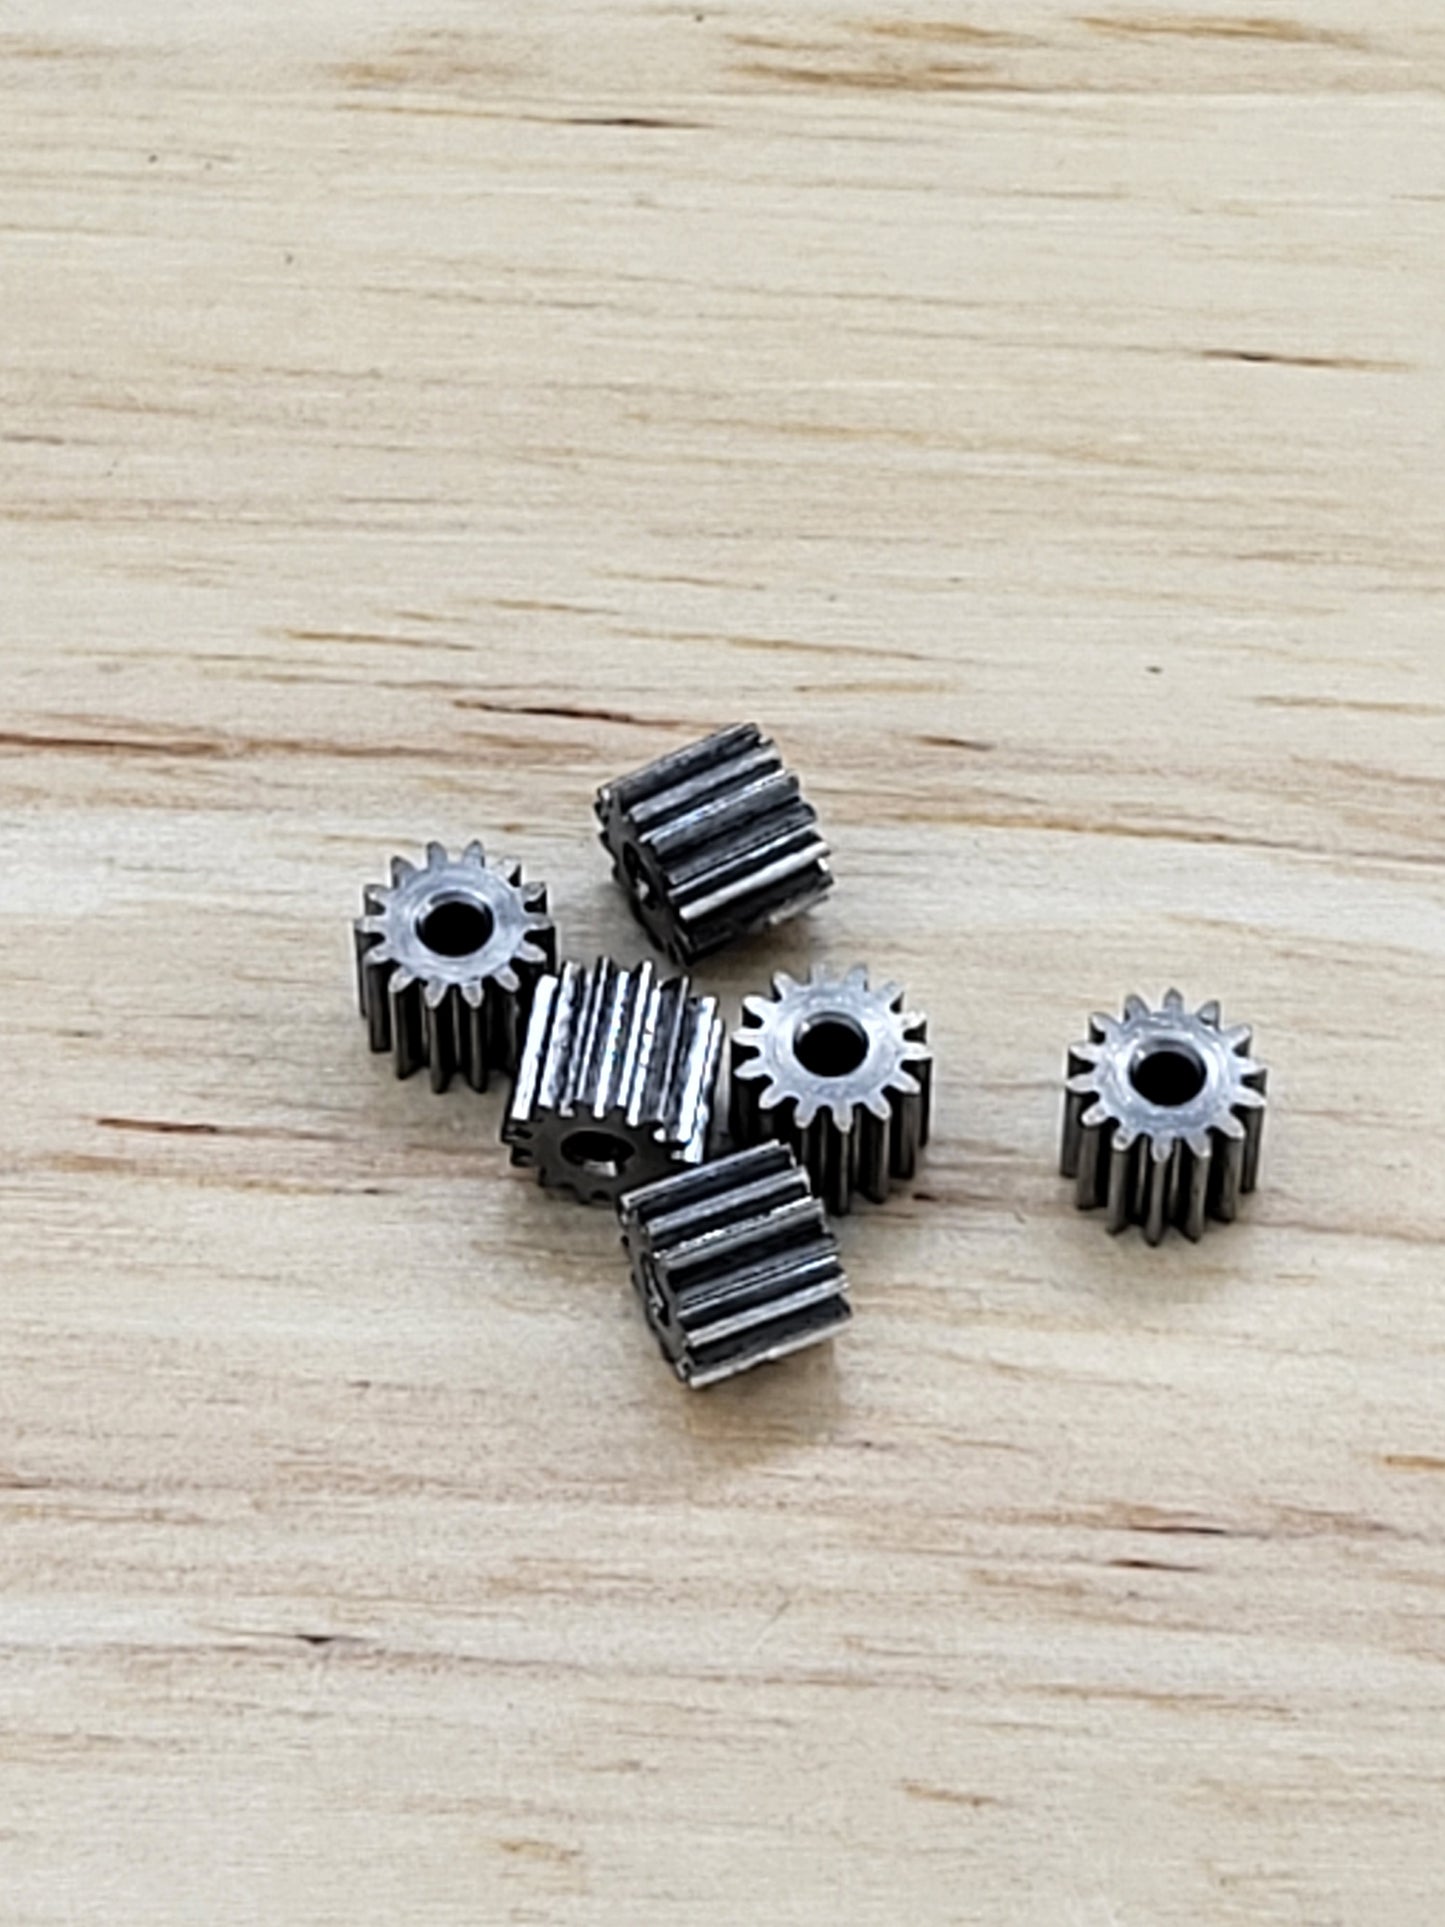 1.5mm Shaft Hardened Steel pinion gears